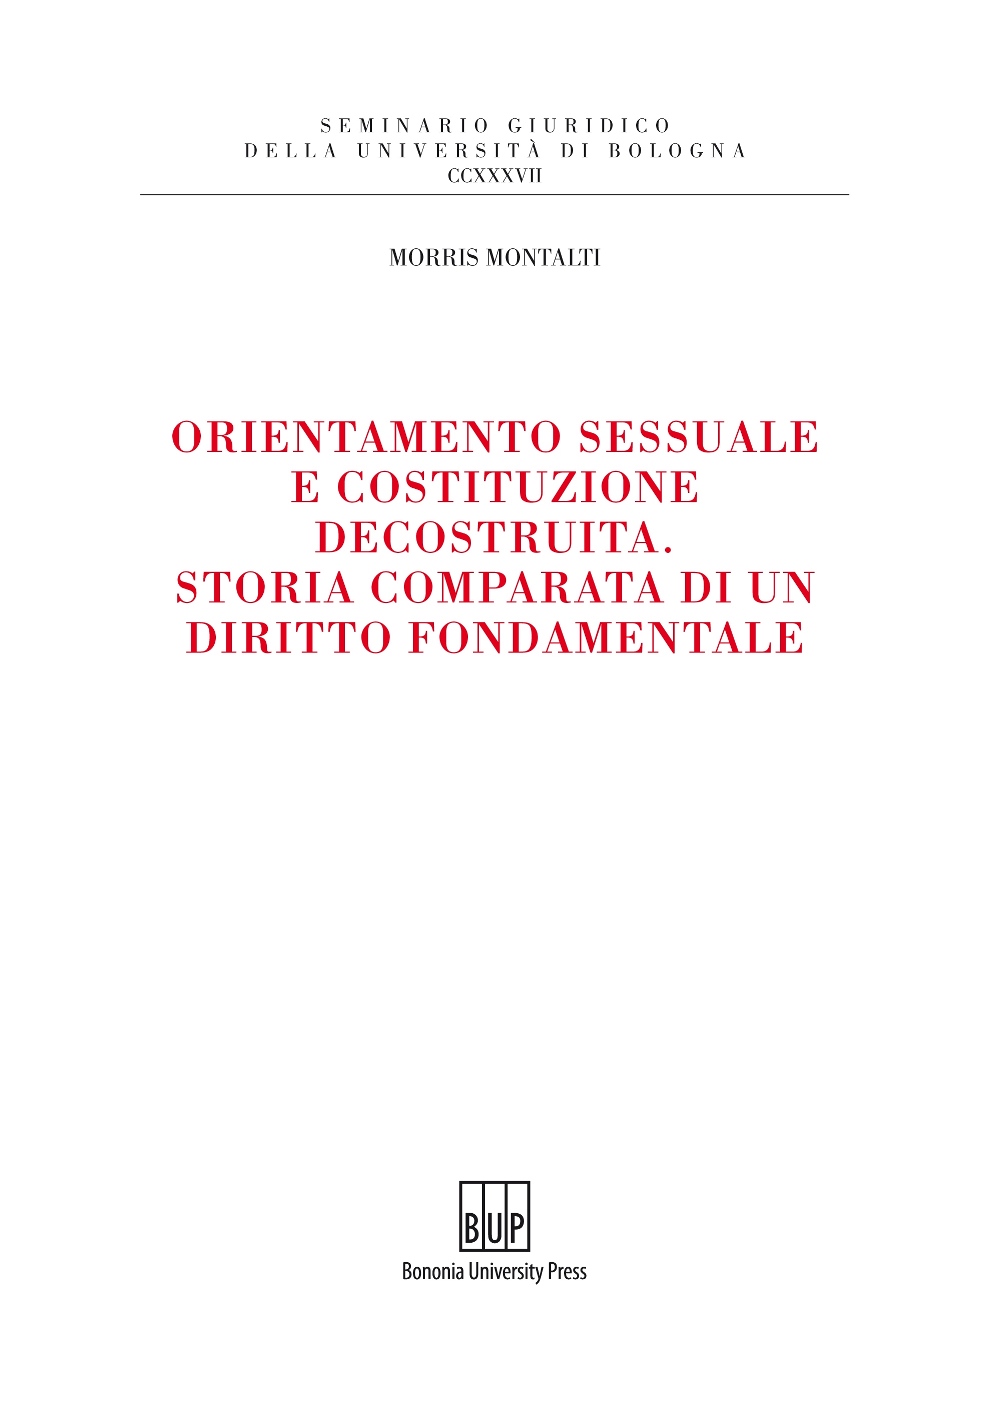 Orientamento sessuale e costituzione decostruita - Bologna University Press